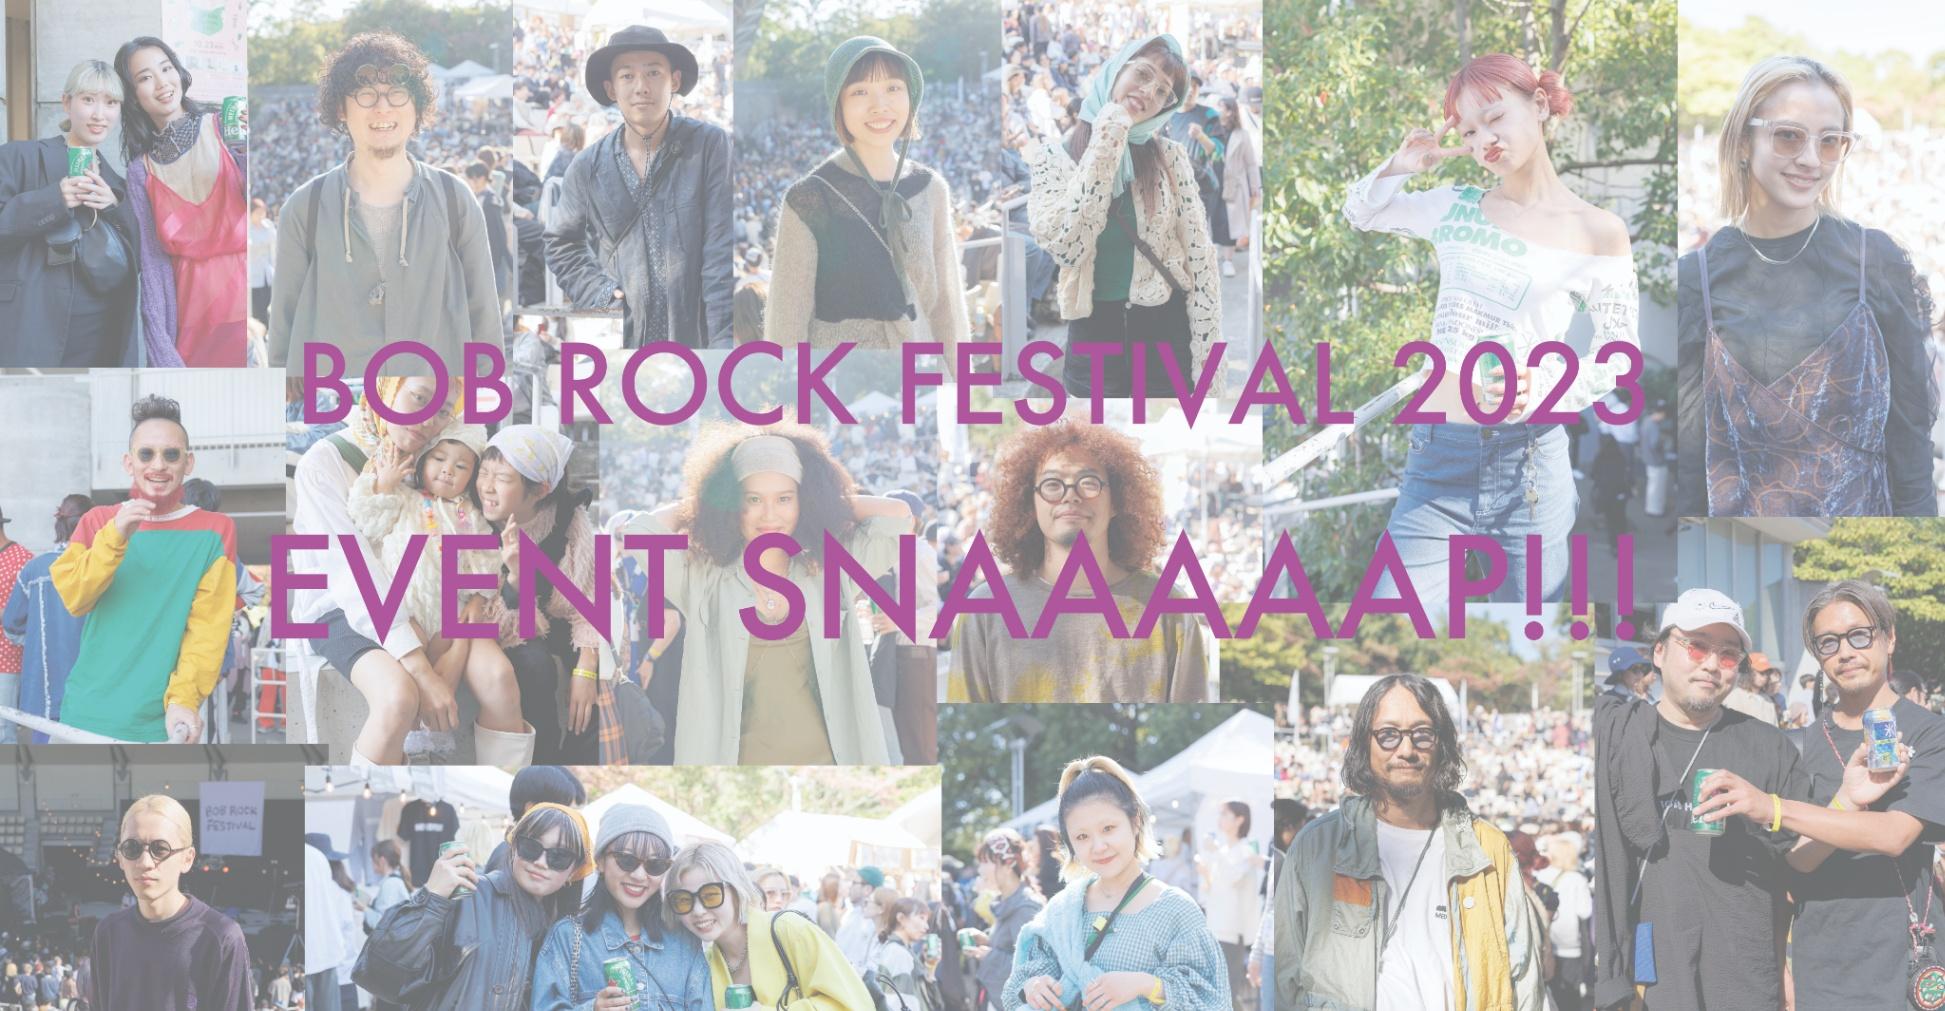 EVENT SNAAAAAP!!! 【BOB ROCK FESTIVAL 2023編 part.4】